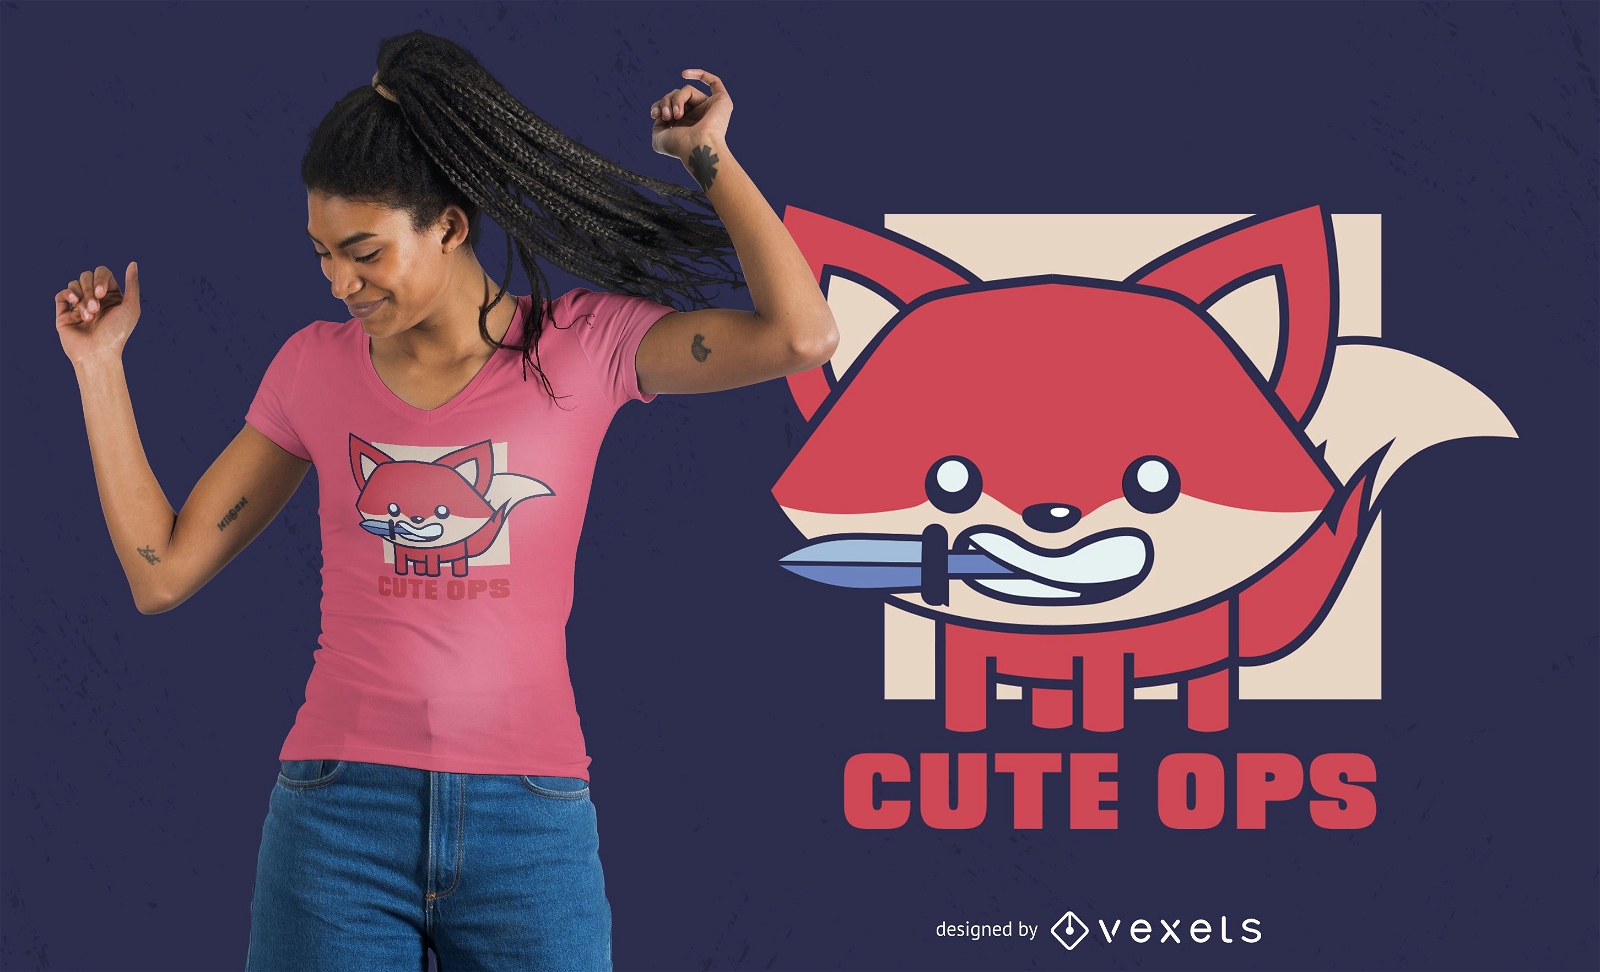 Cute ops fox t-shirt design